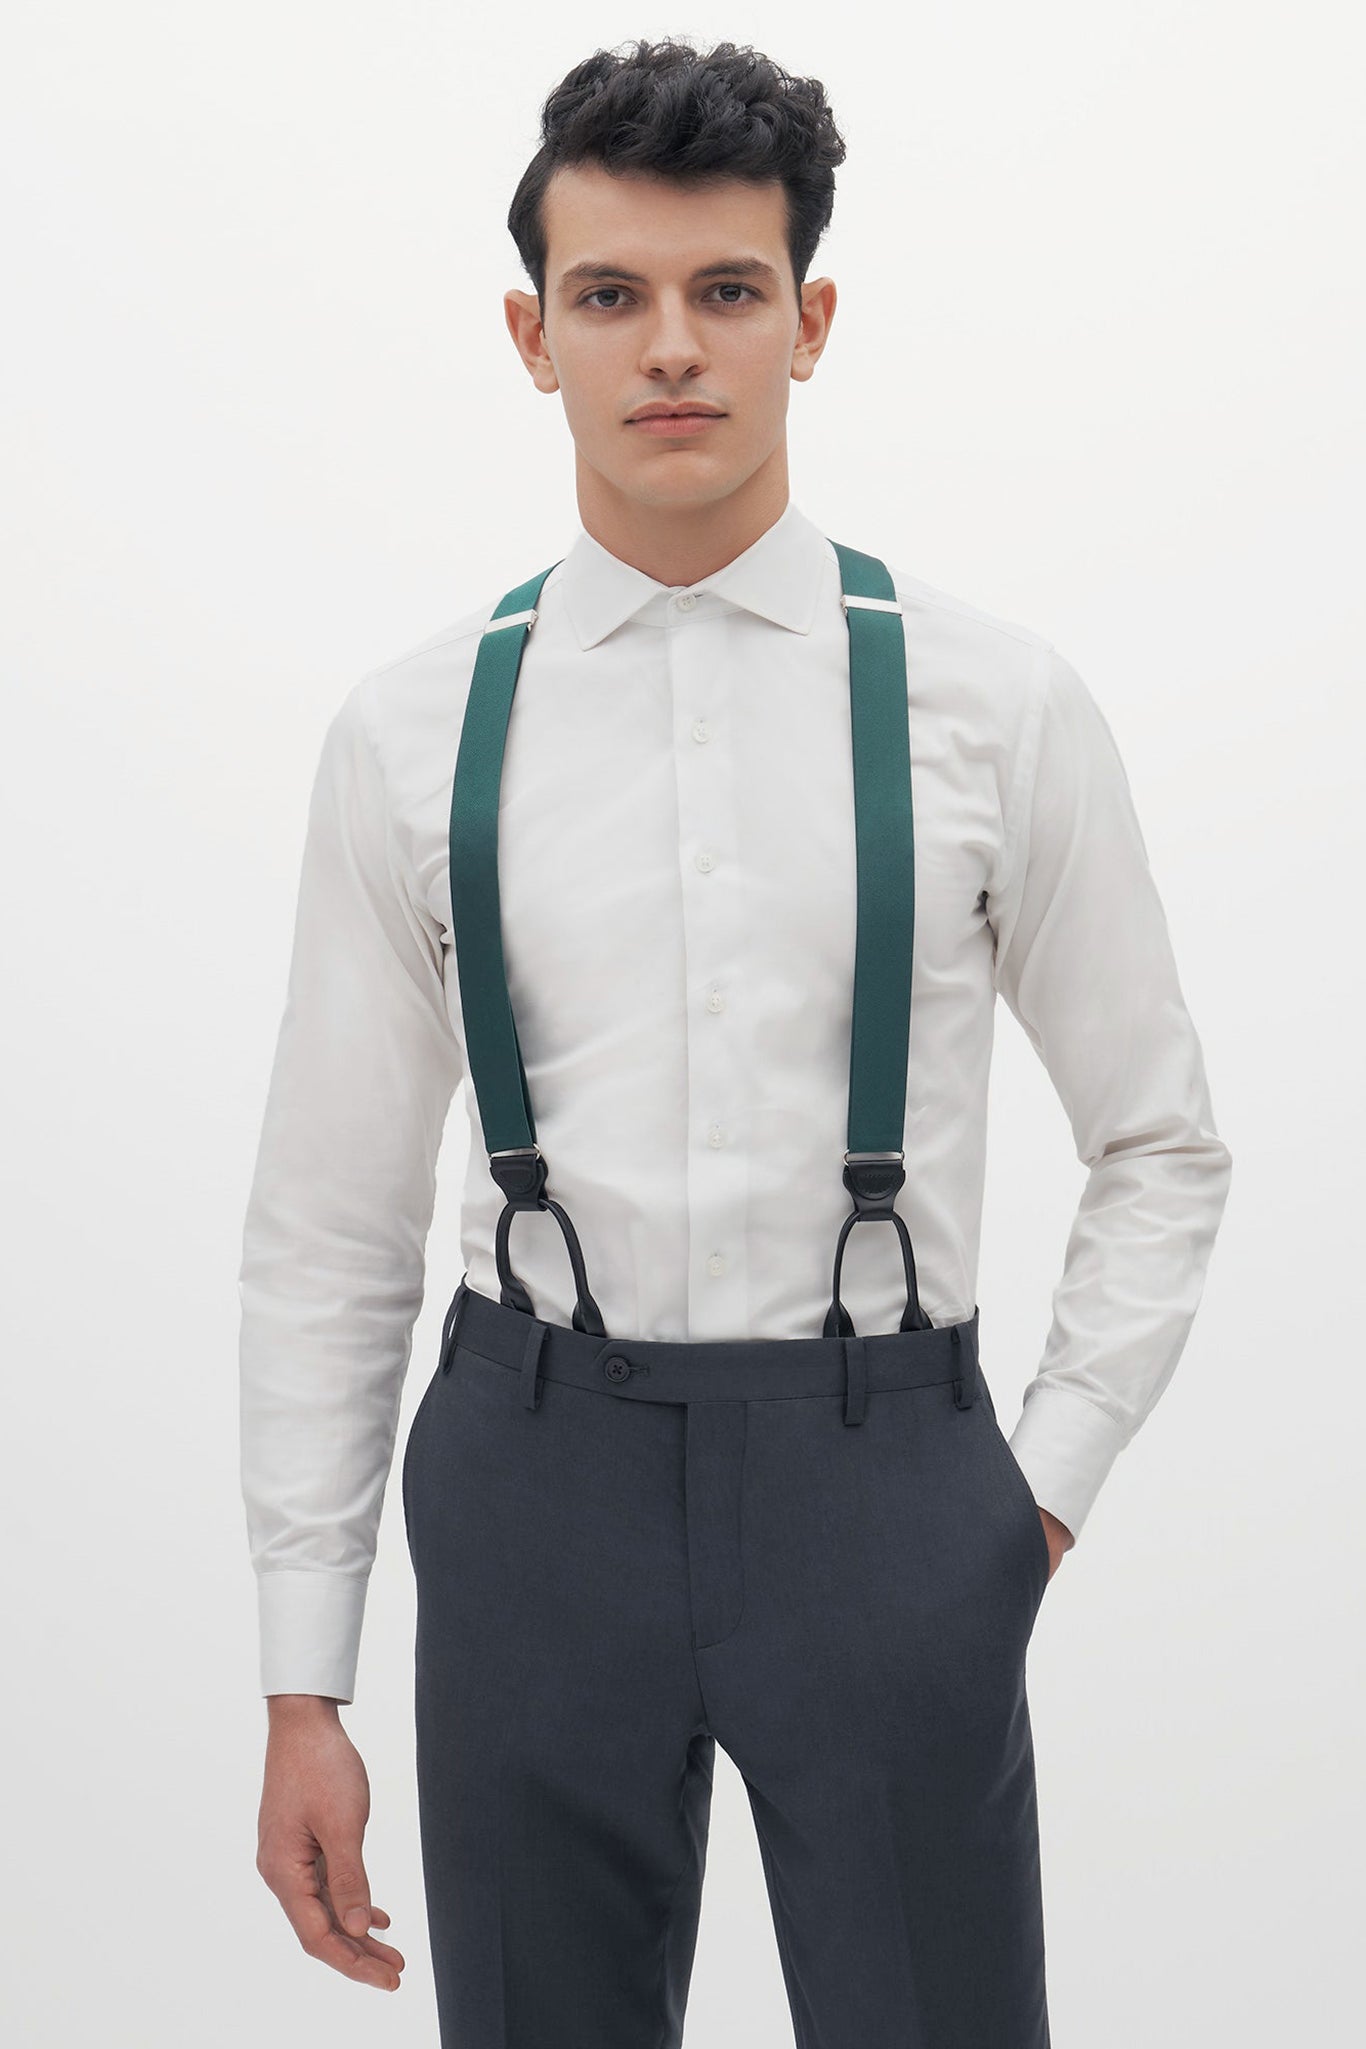 Hunter Green Grosgrain Suspenders